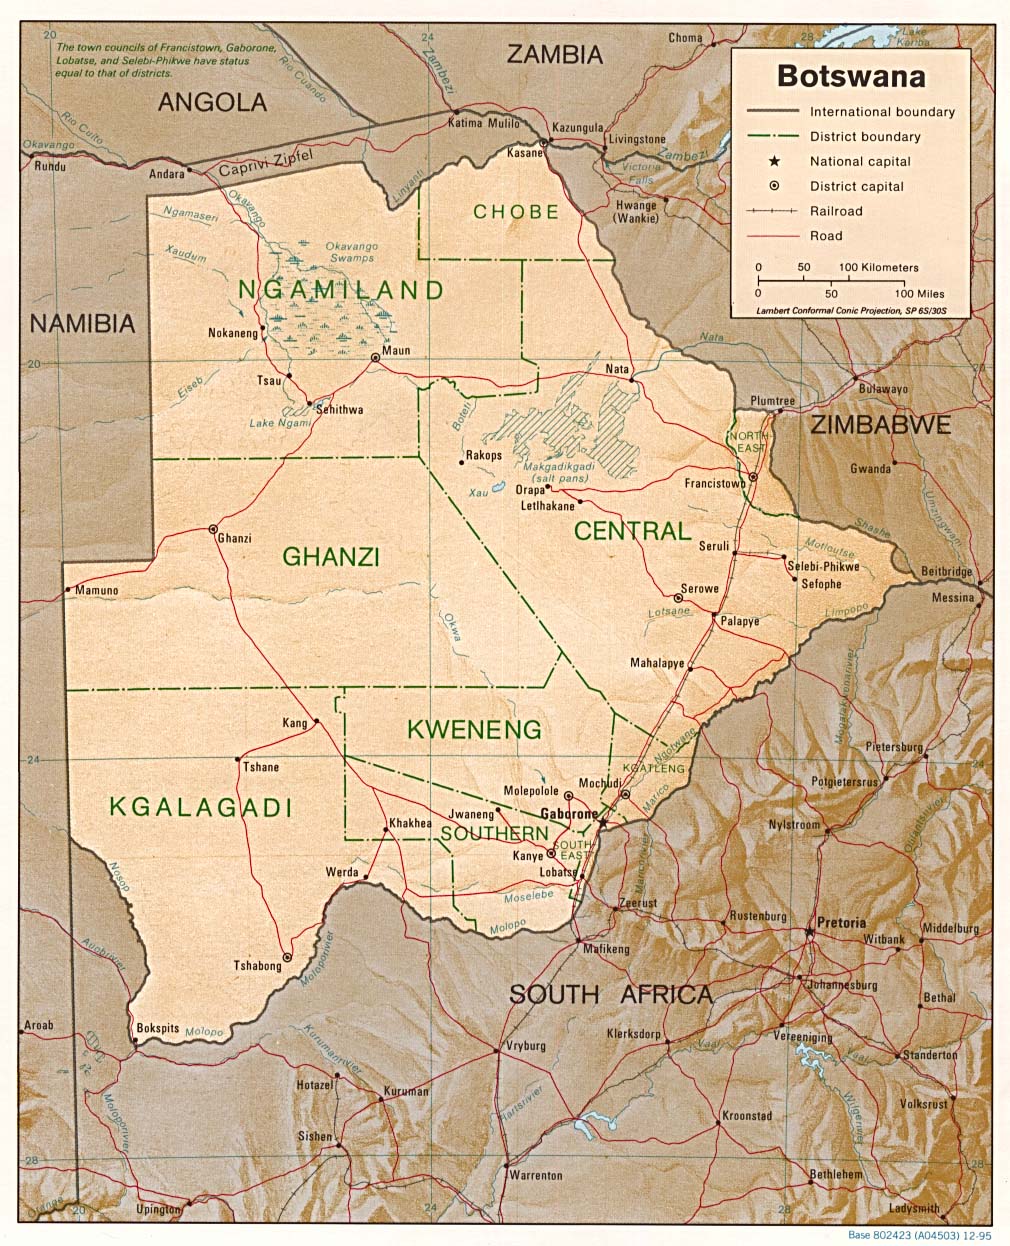 carte Botswana